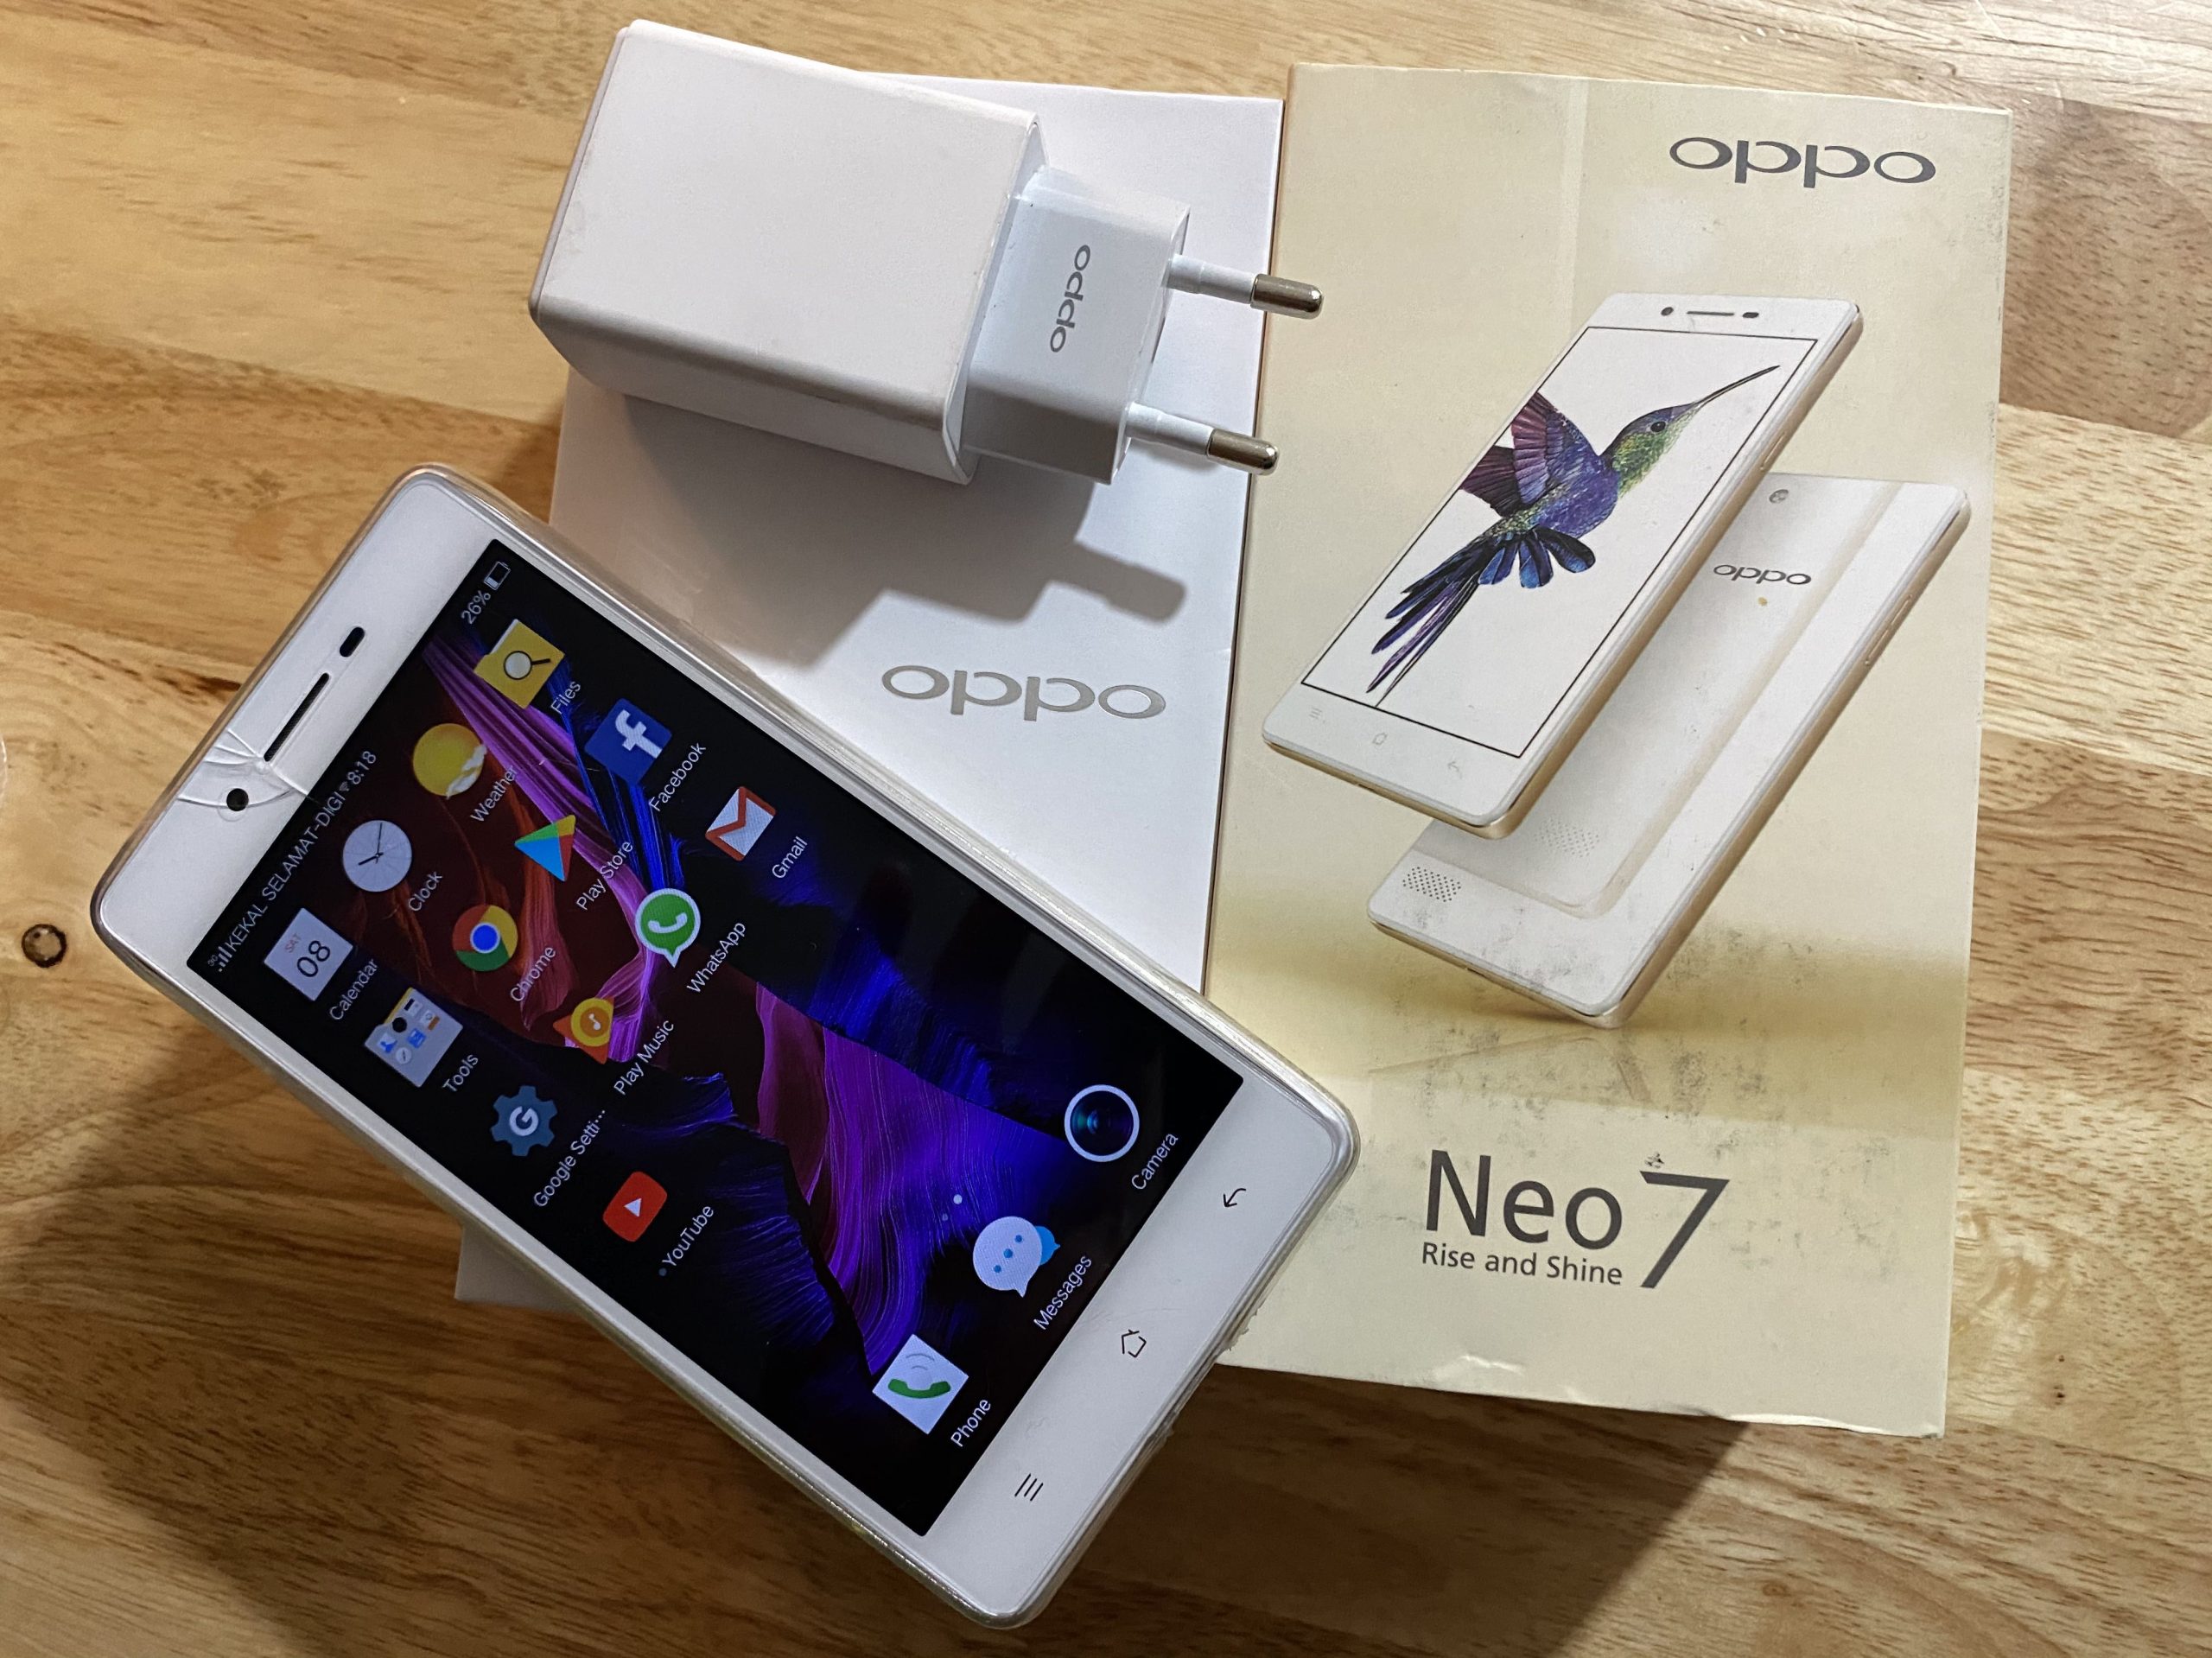 ” هاتف Oppo Neo 7 بأقل من 2500 جنية” .. أرخص موبايل من أوبو بشاشة كبيرة وعالية السطوع